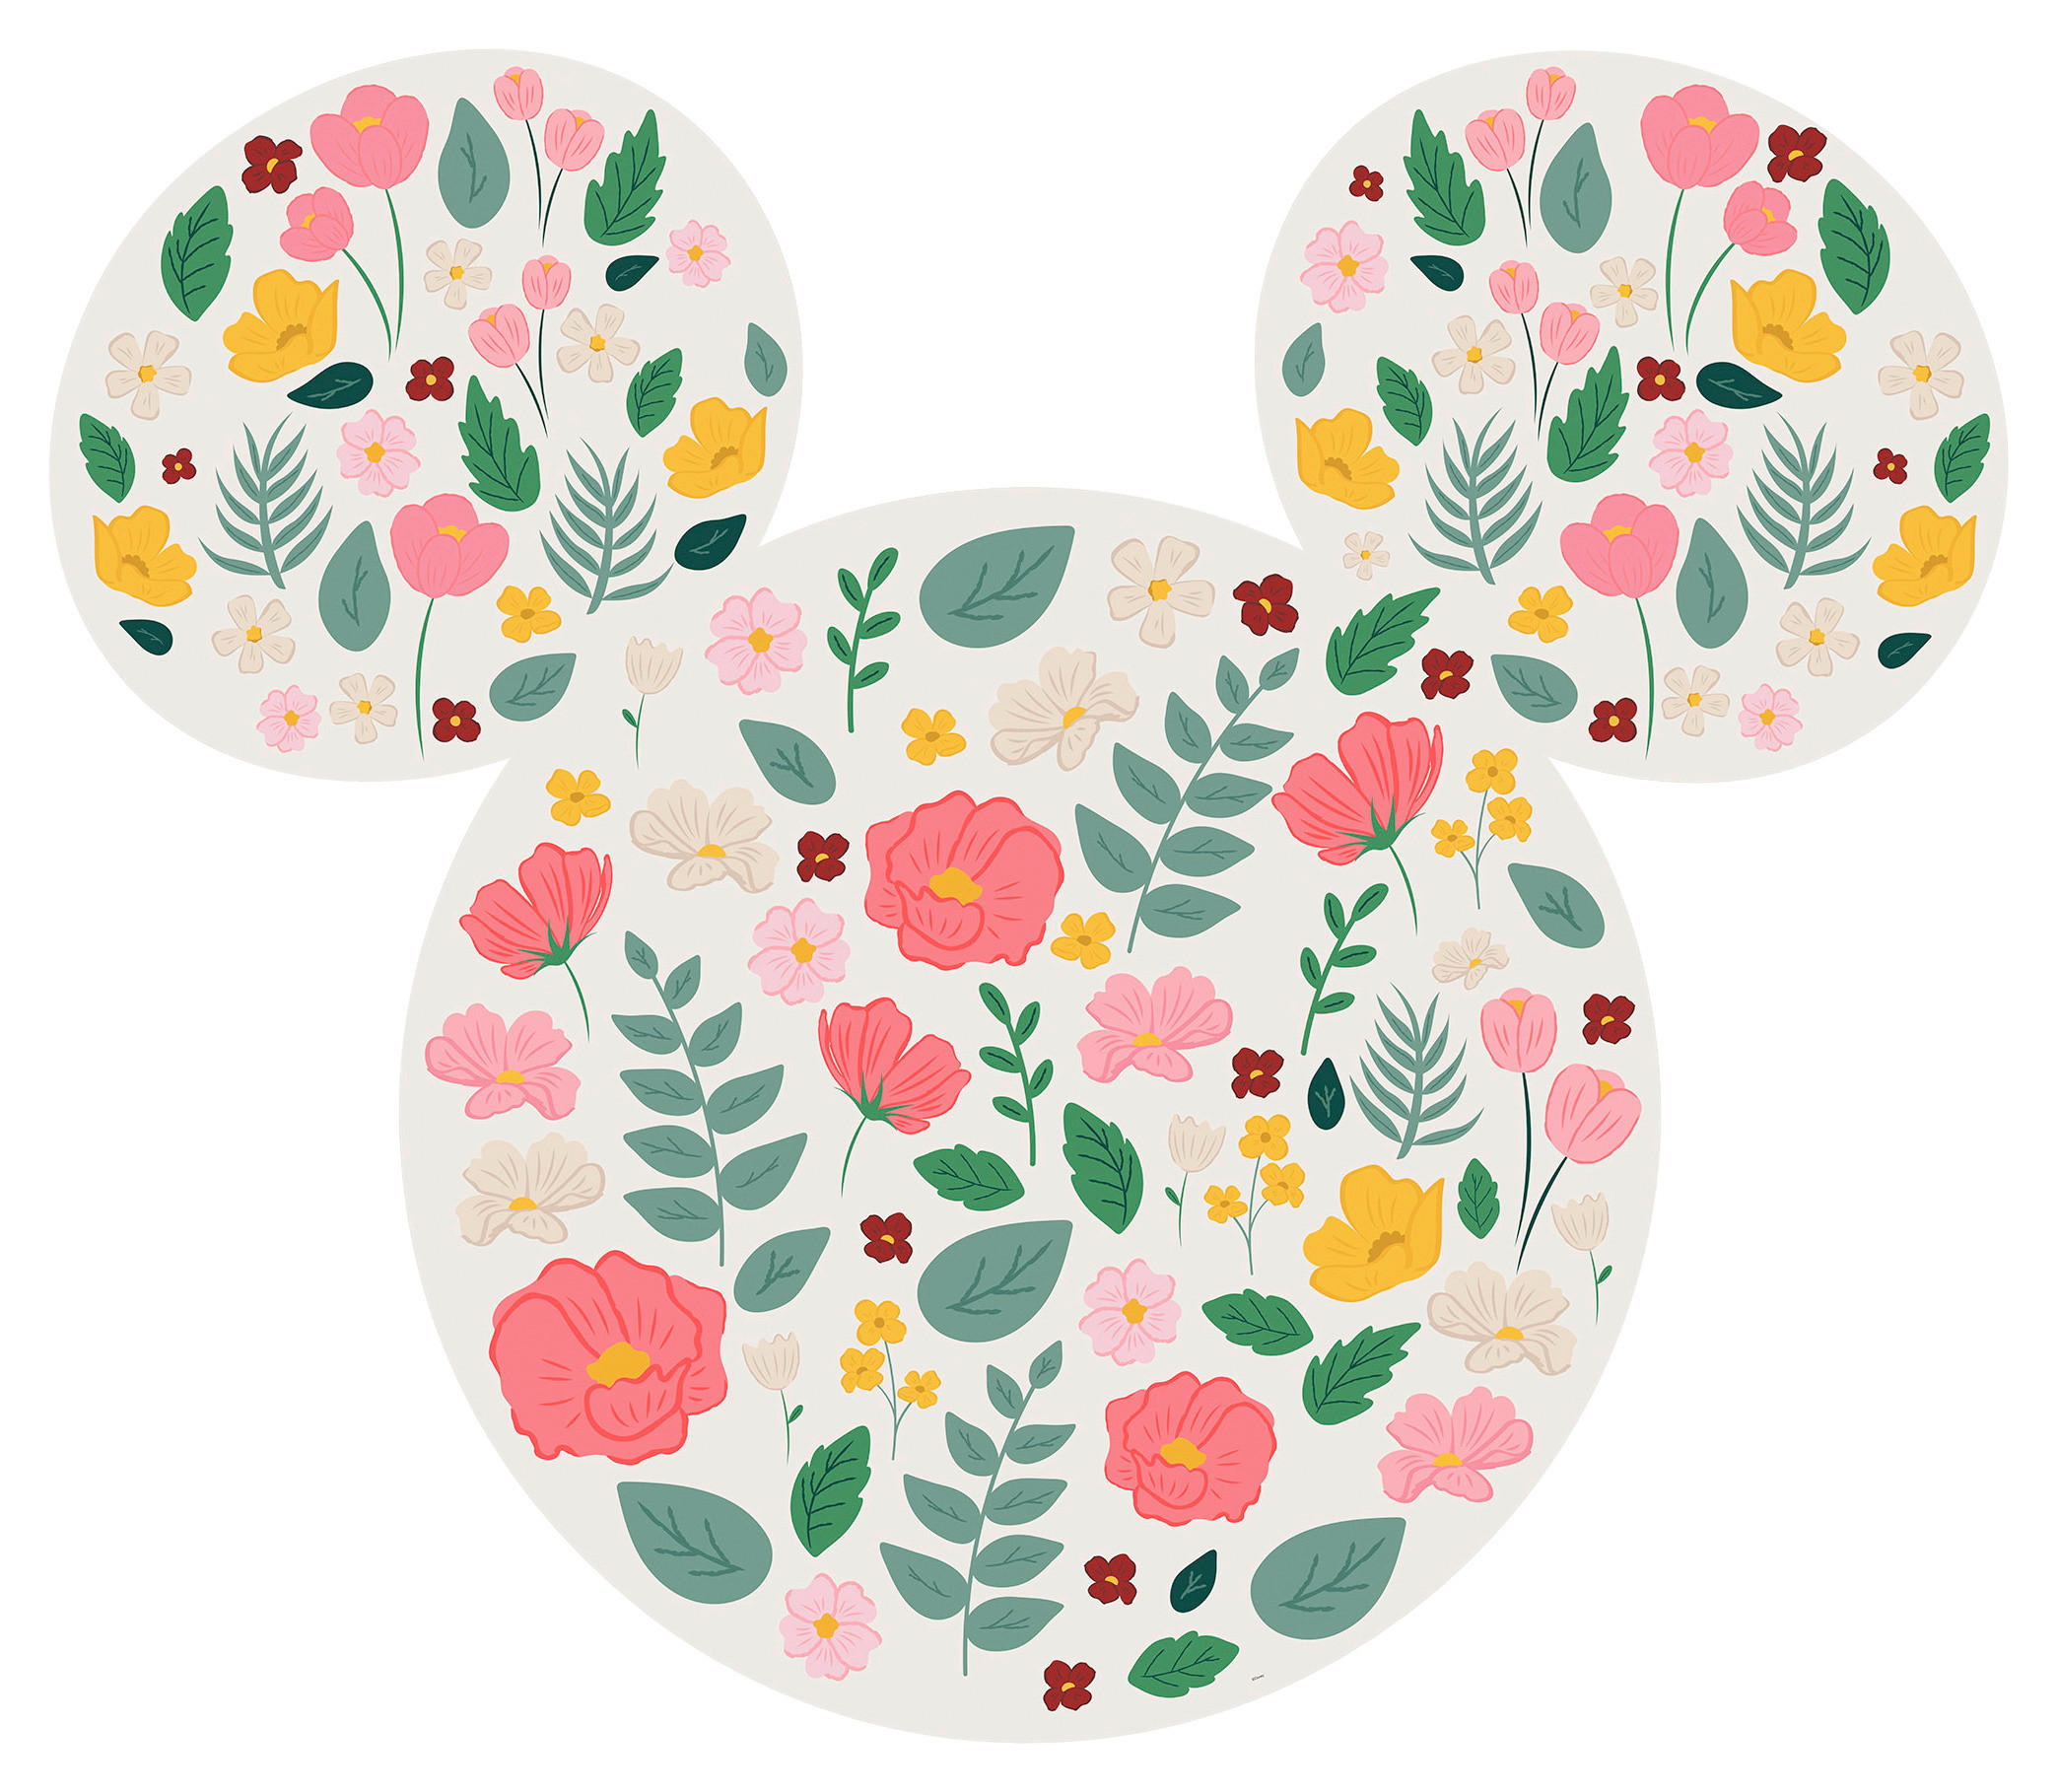 Vliestapete Mickey-Mouse-Design (selbstklebend)